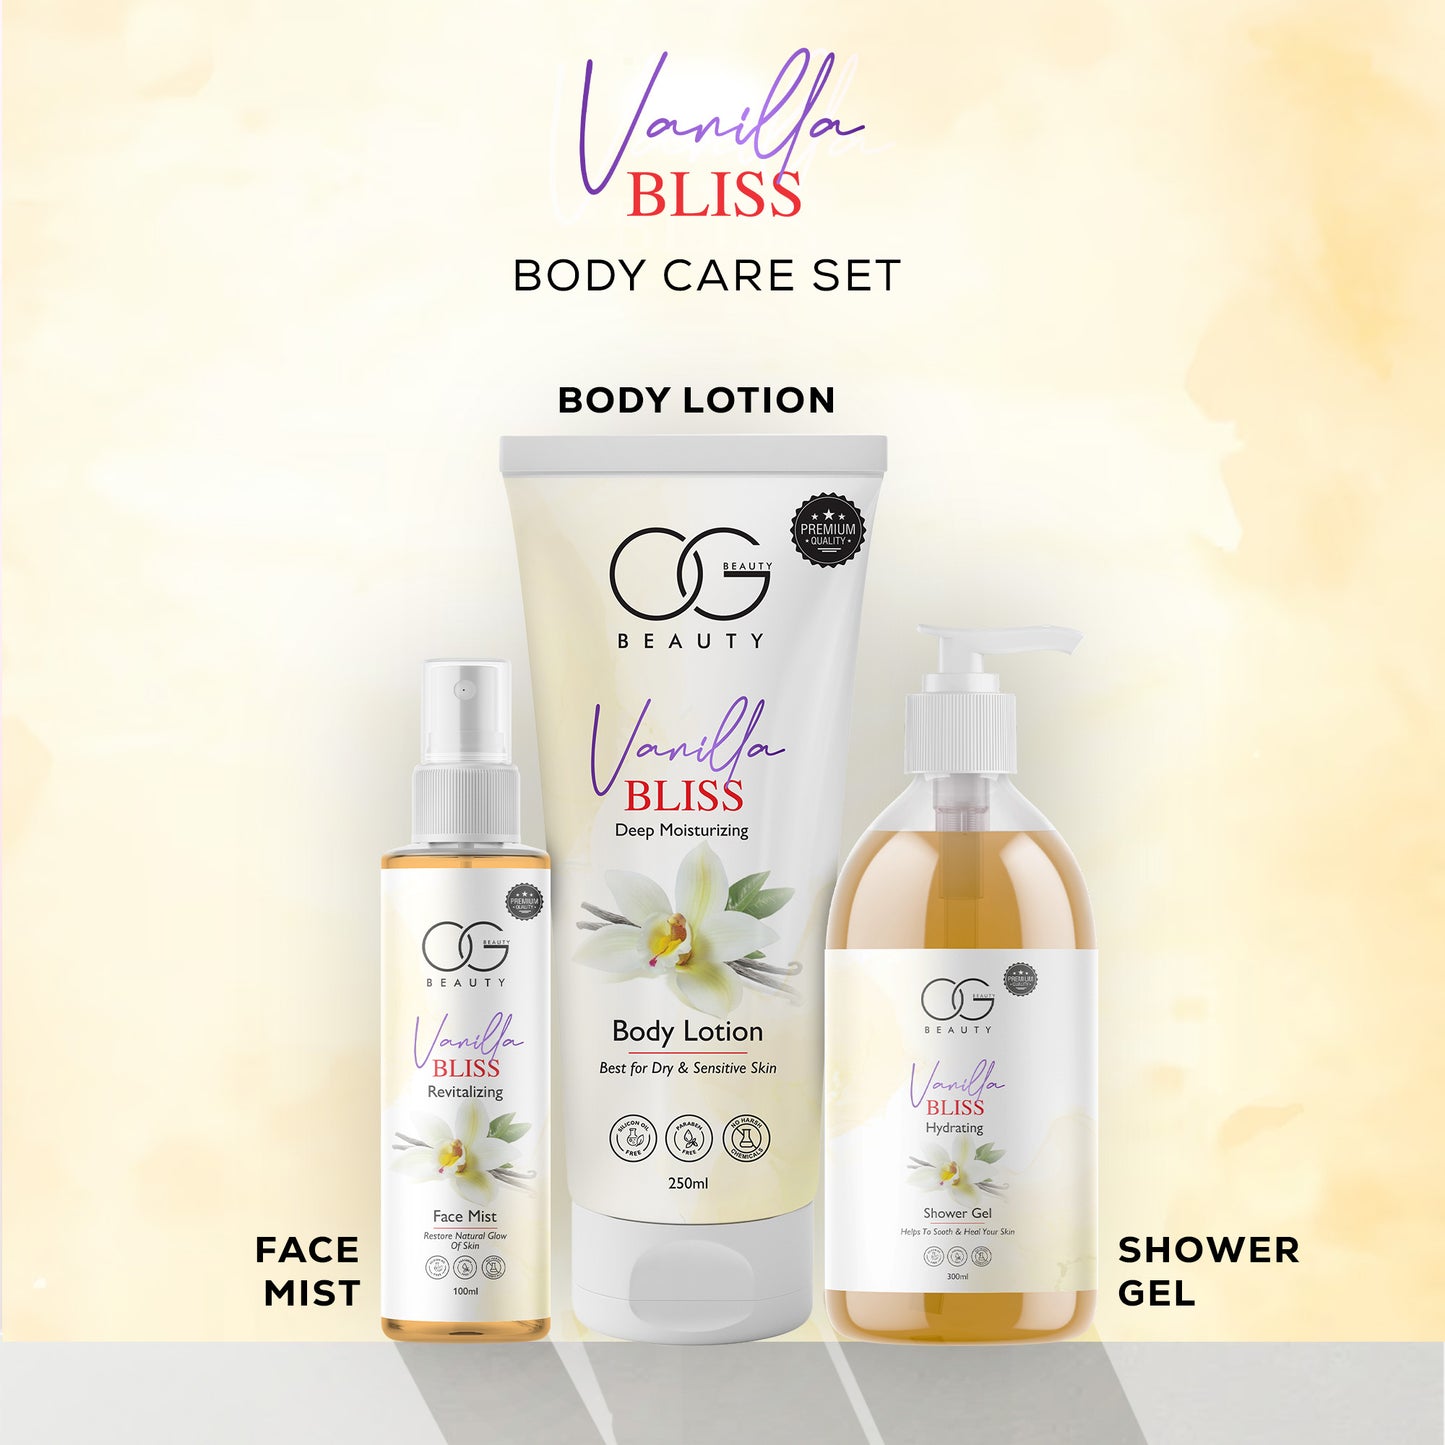 OG Beauty Vanilla Bliss Radiance Trio: Body Lotion, Face Mist, Shower Gel